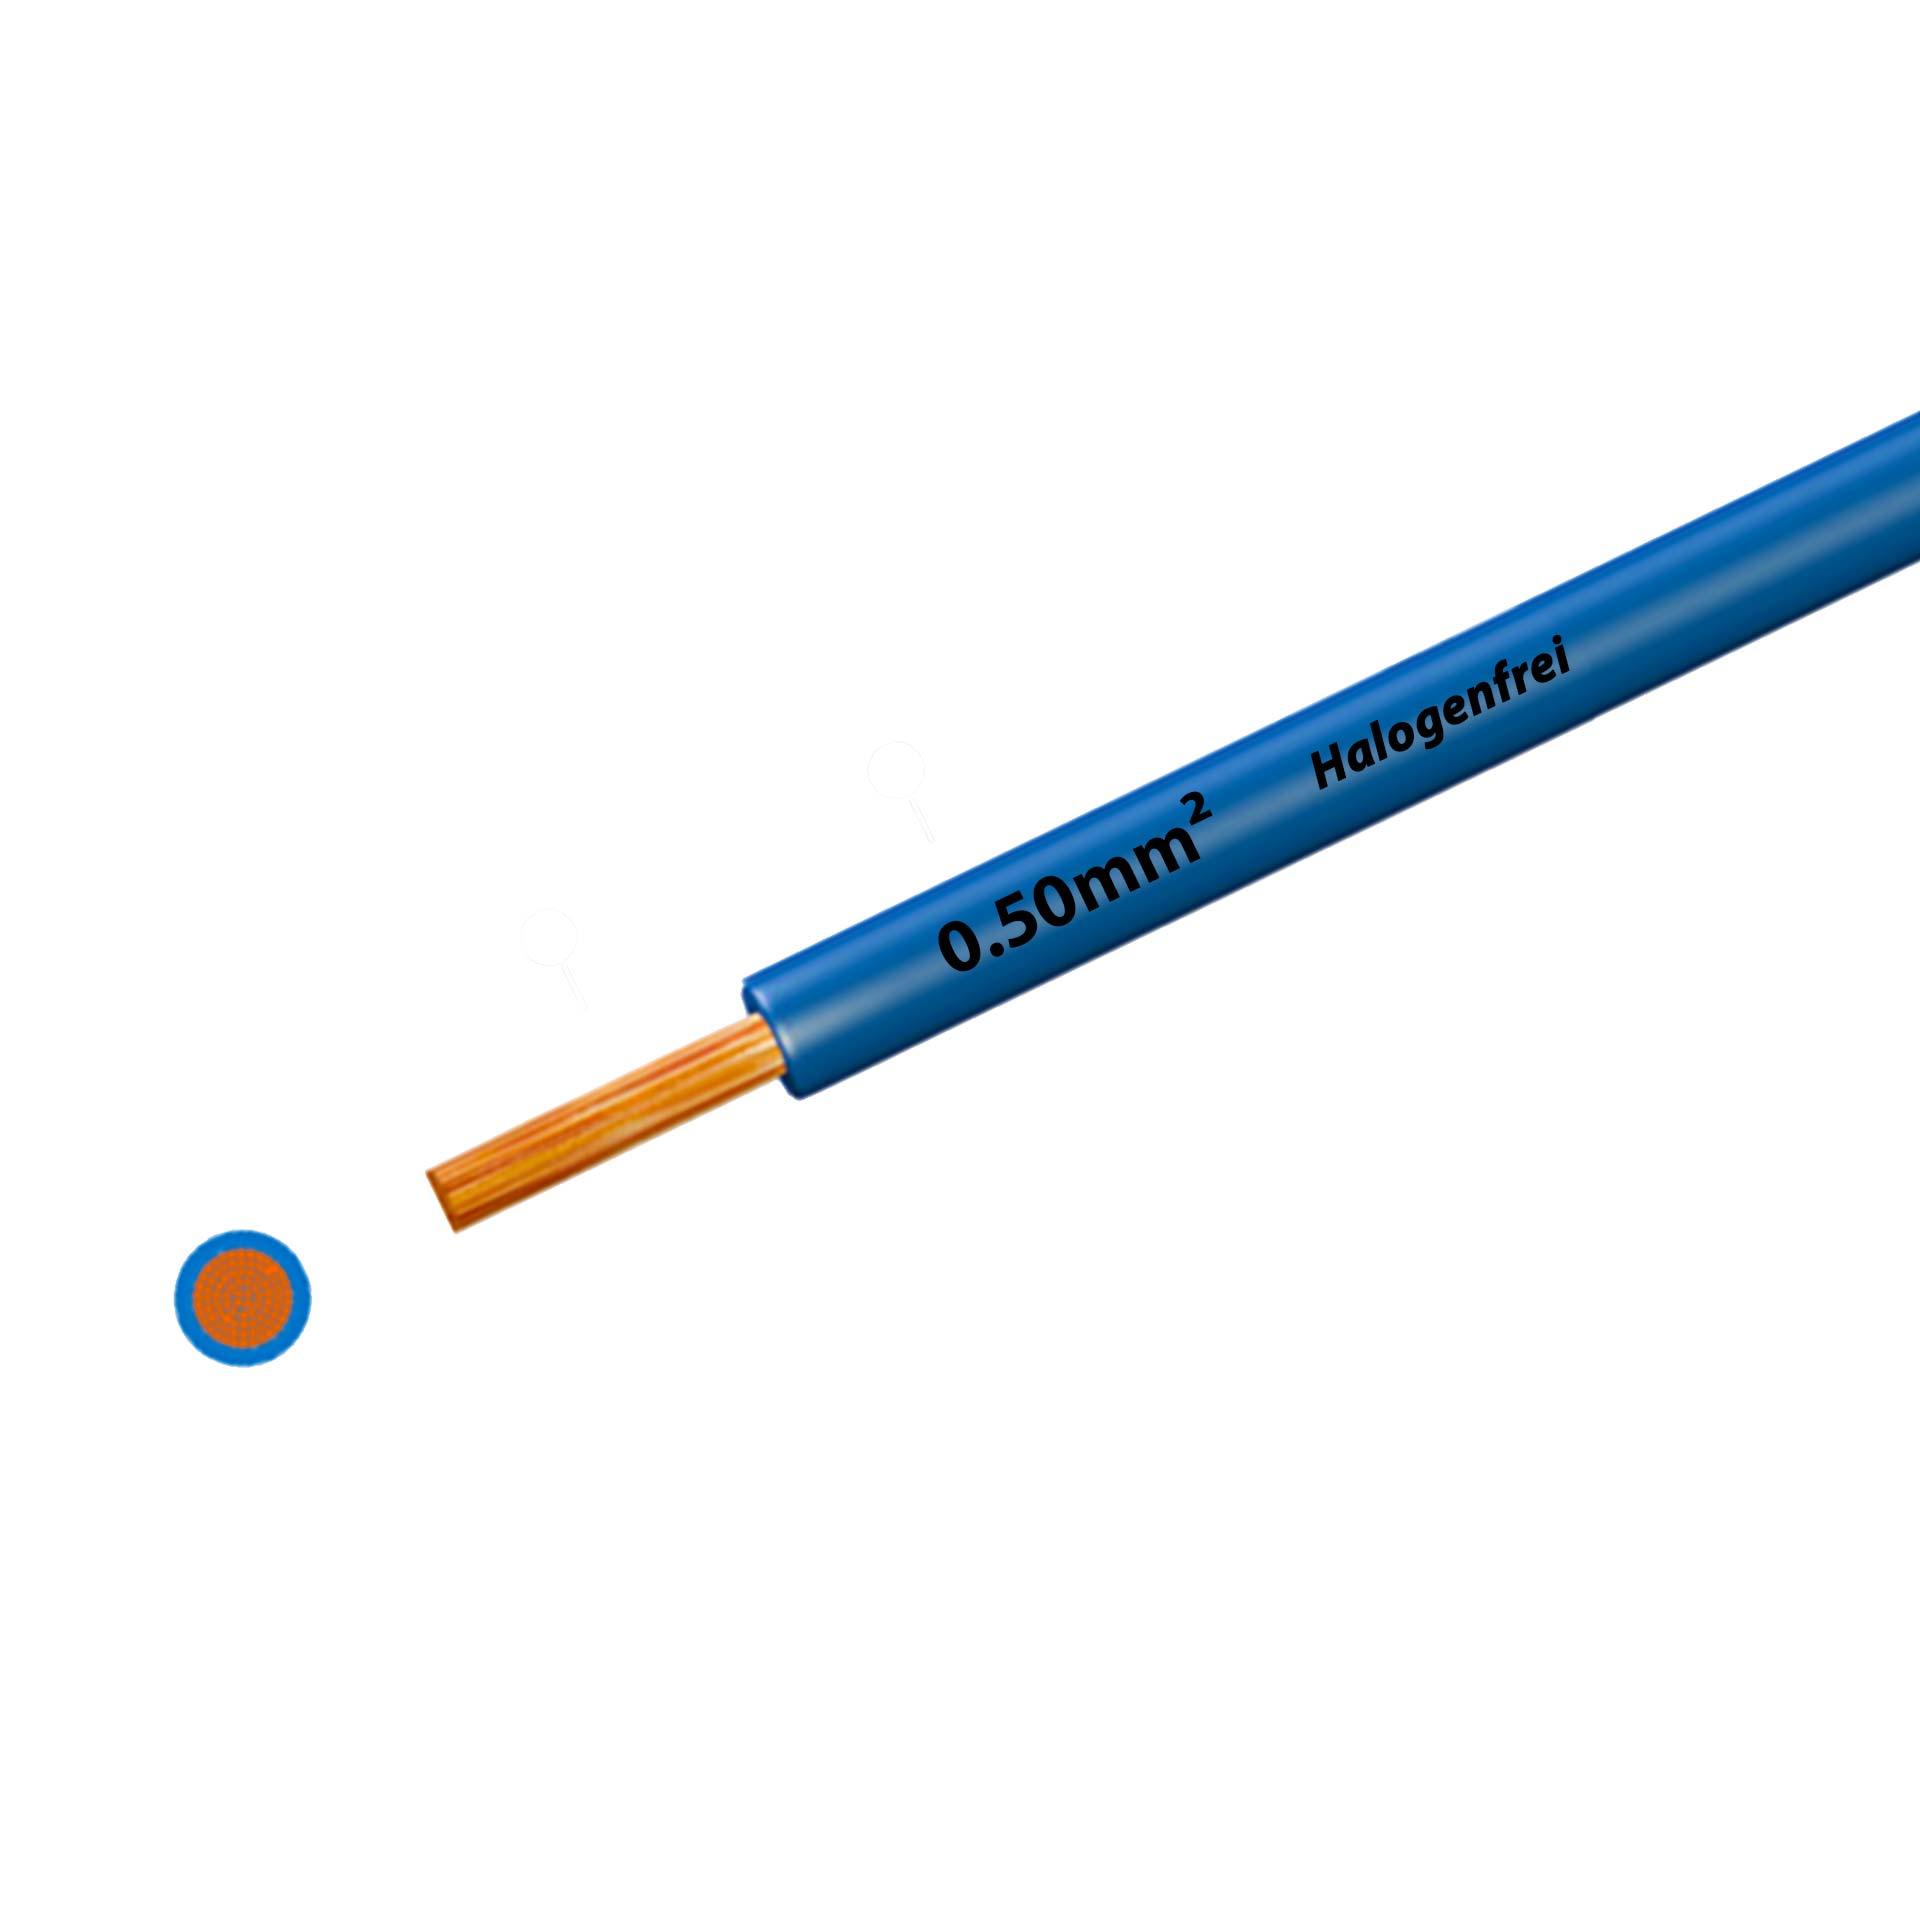 Litze halogenfrei 90° C , 500V, 0.50 mm2, hellblau (RAL 5012), auf Kunststoffrolle